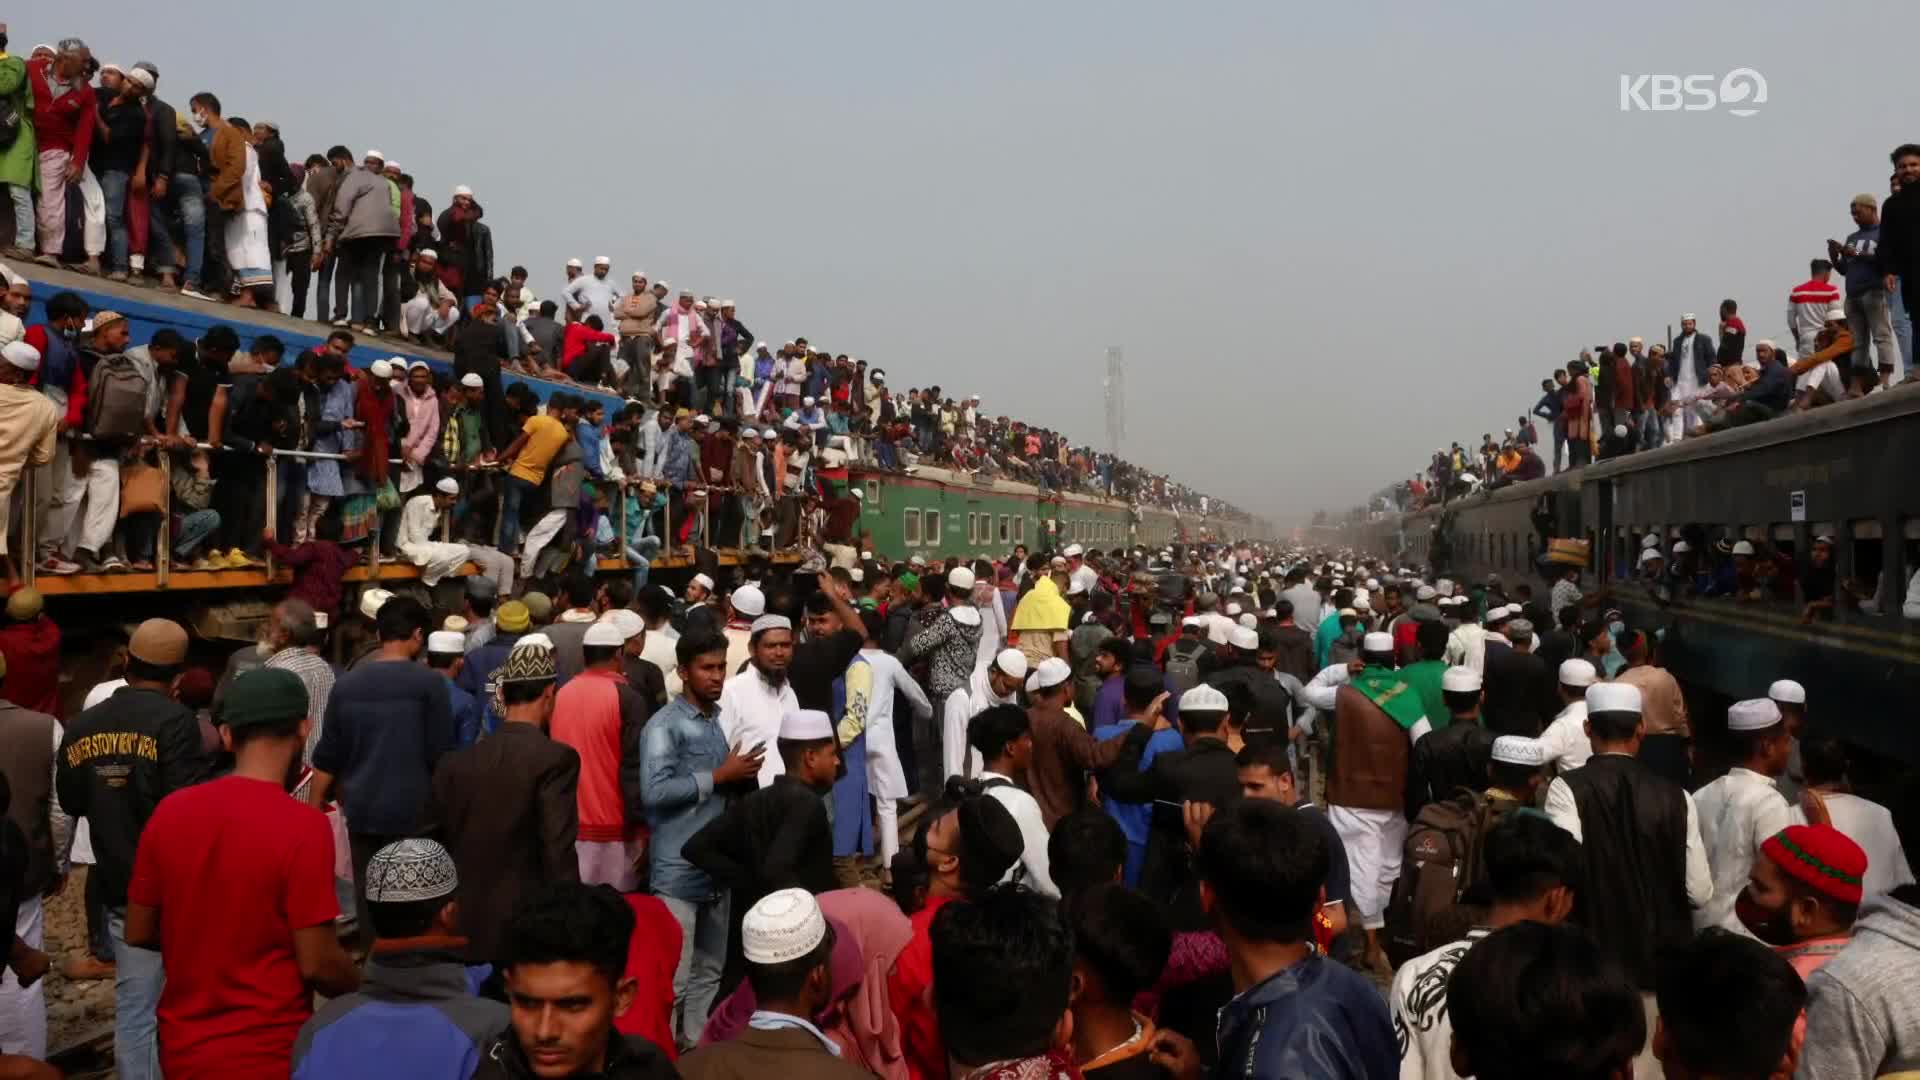 [지구촌 포토] ‘타고 내리실 때 주의’…방글라데시에 몰린 수백만 무슬림